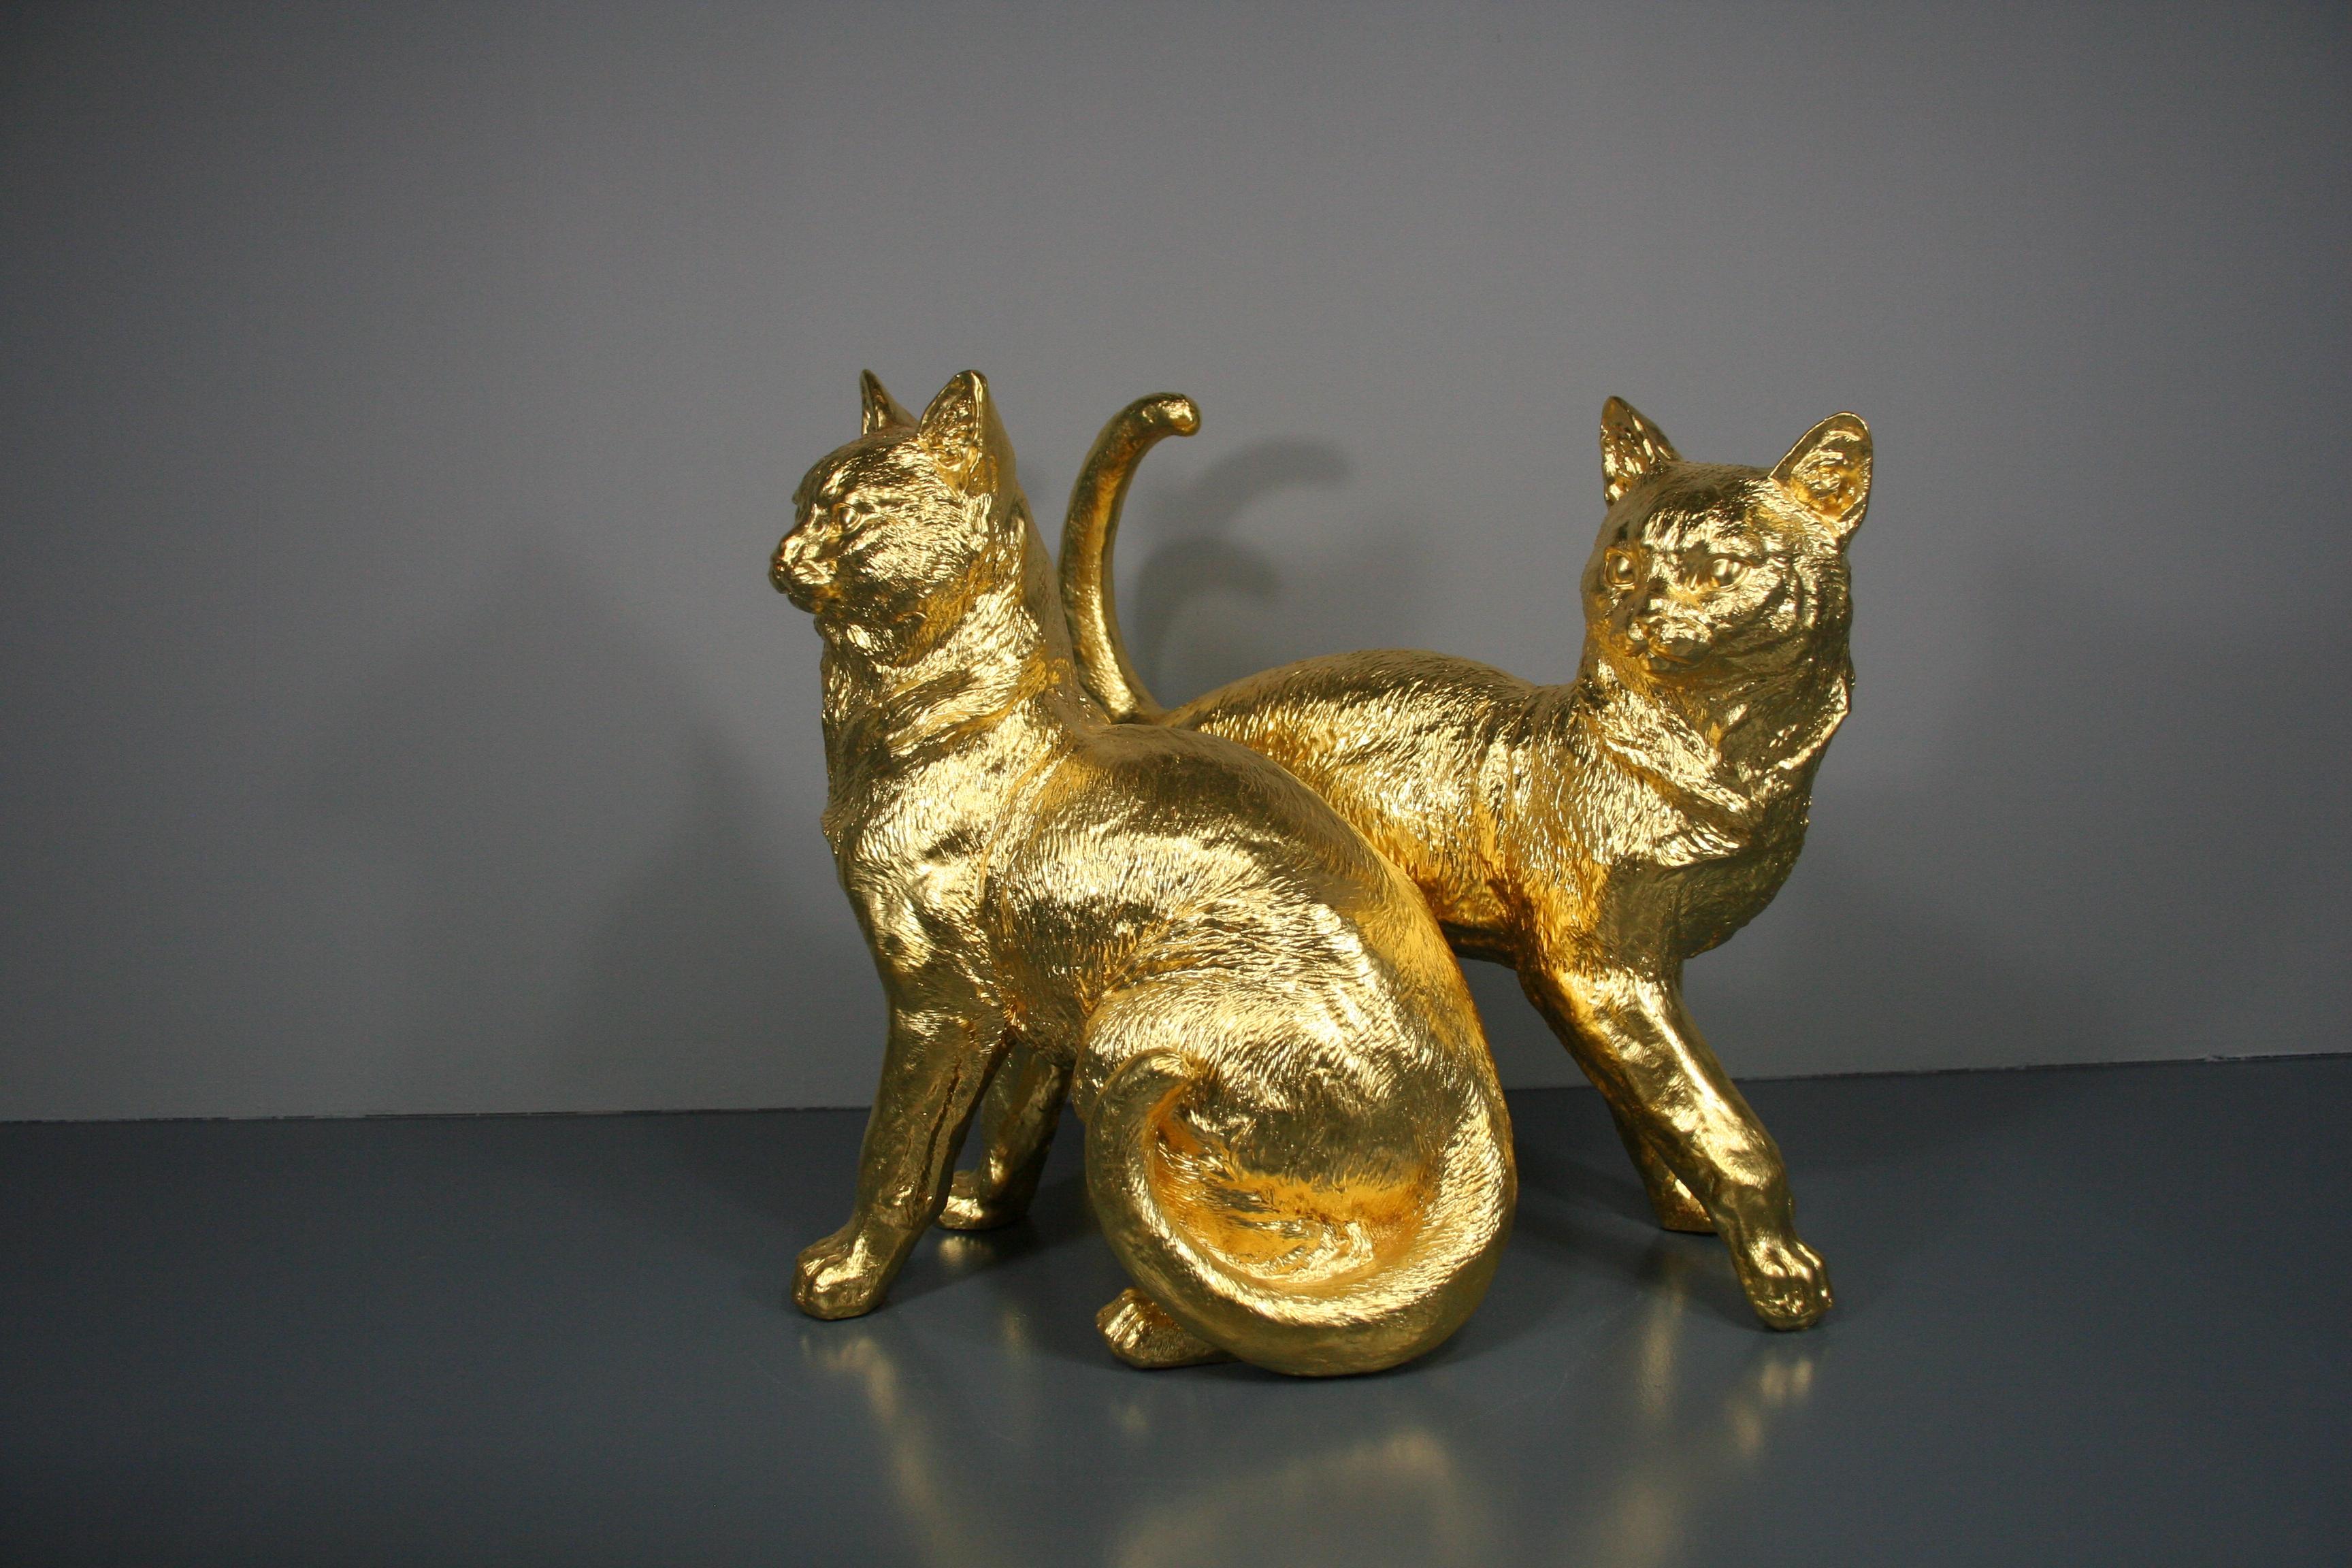 Steven Figurative Sculpture - Golden cat pair 24 Karat gilded